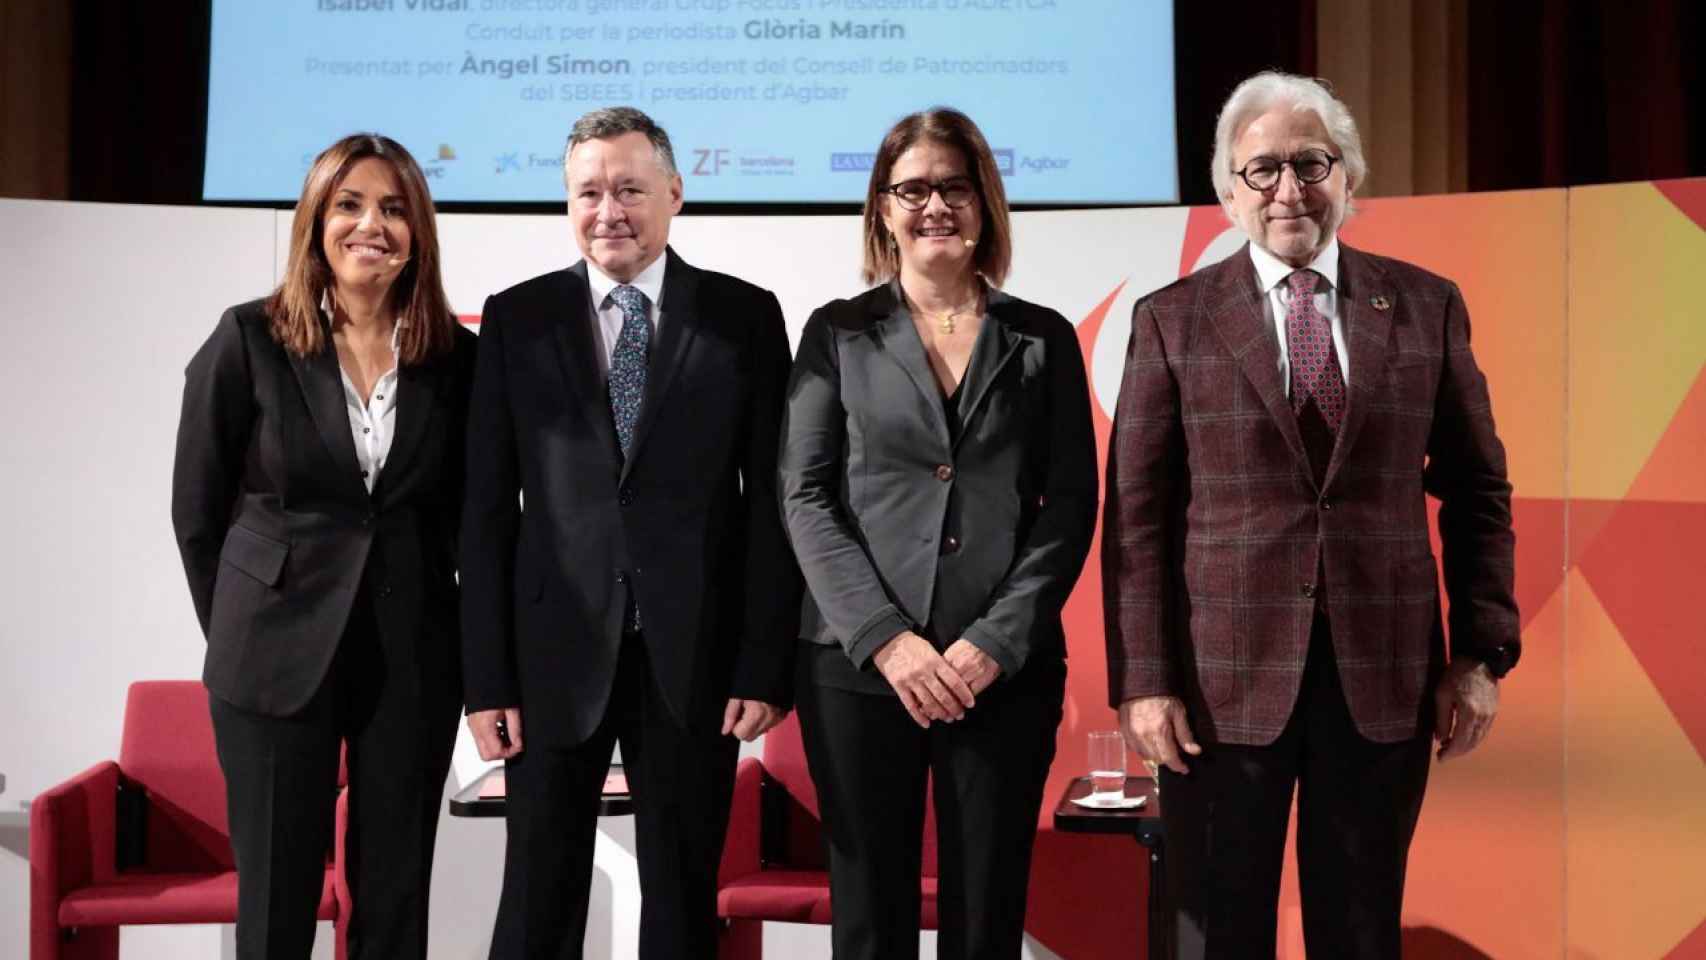 Isabel Vidal, Ángel Simón, Glòria Marín y Josep Sánchez Llibre, en Foment / MA